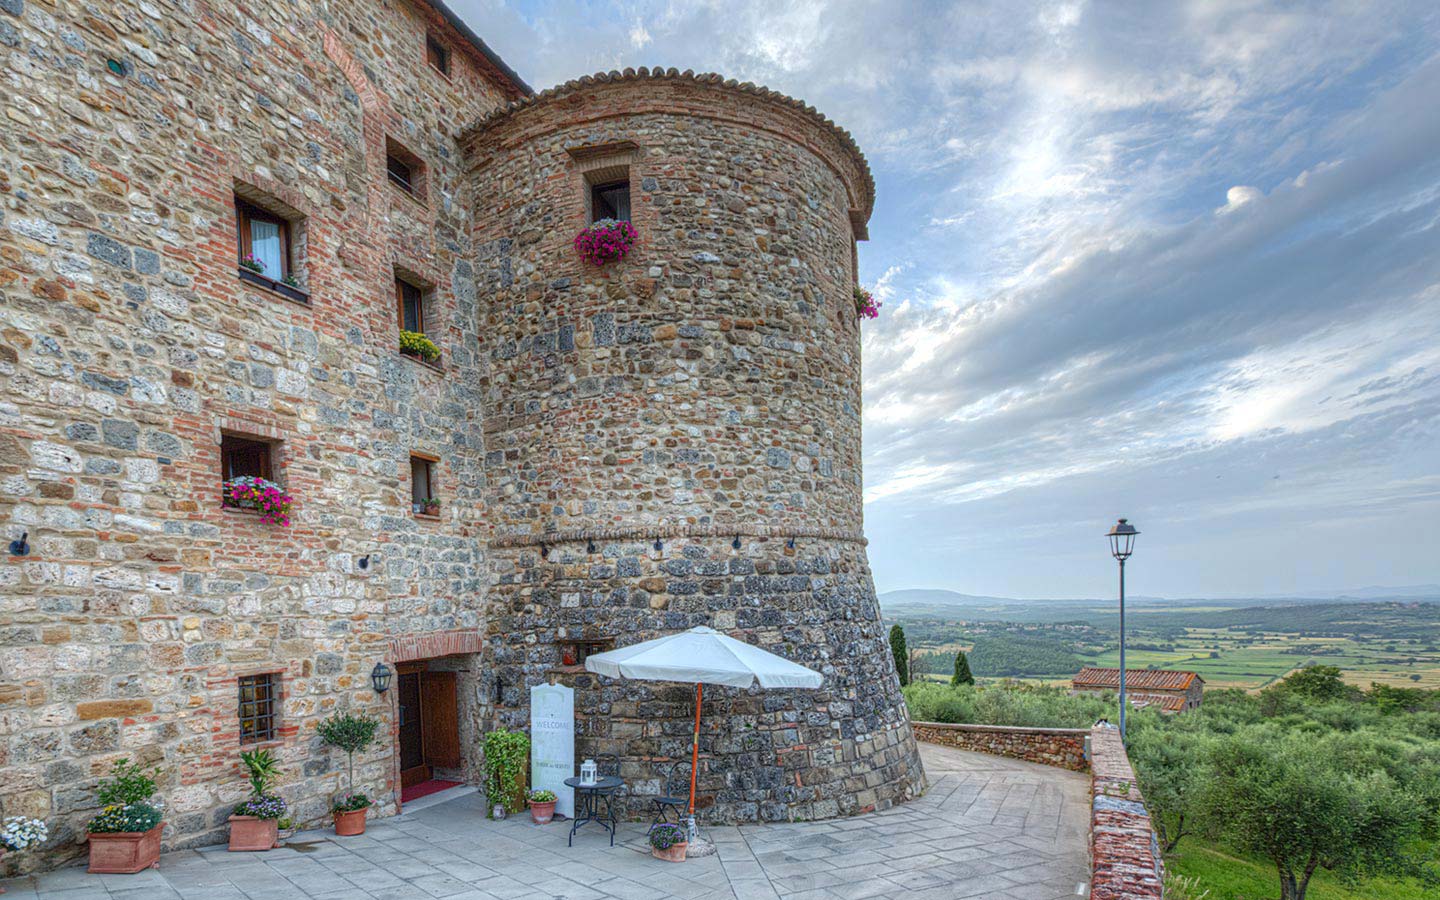 Hotel-Spa-Restaurant in der Toskana Casole d'Elsa in der Provinz Siena